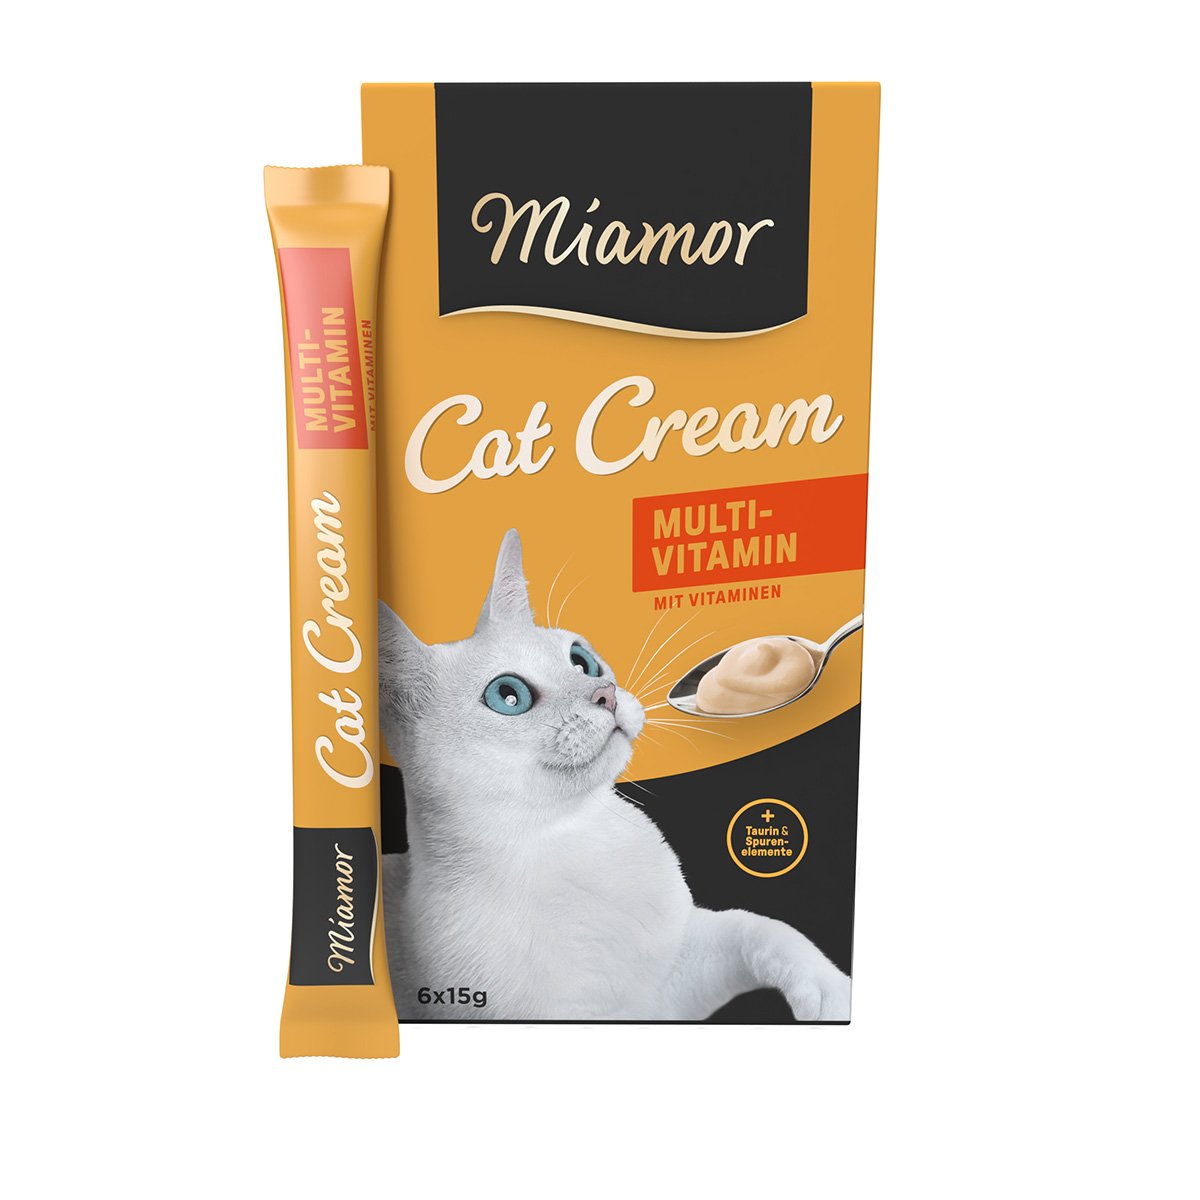 Miamor Cat Cream Multi-Vitamin 6x15g von Miamor